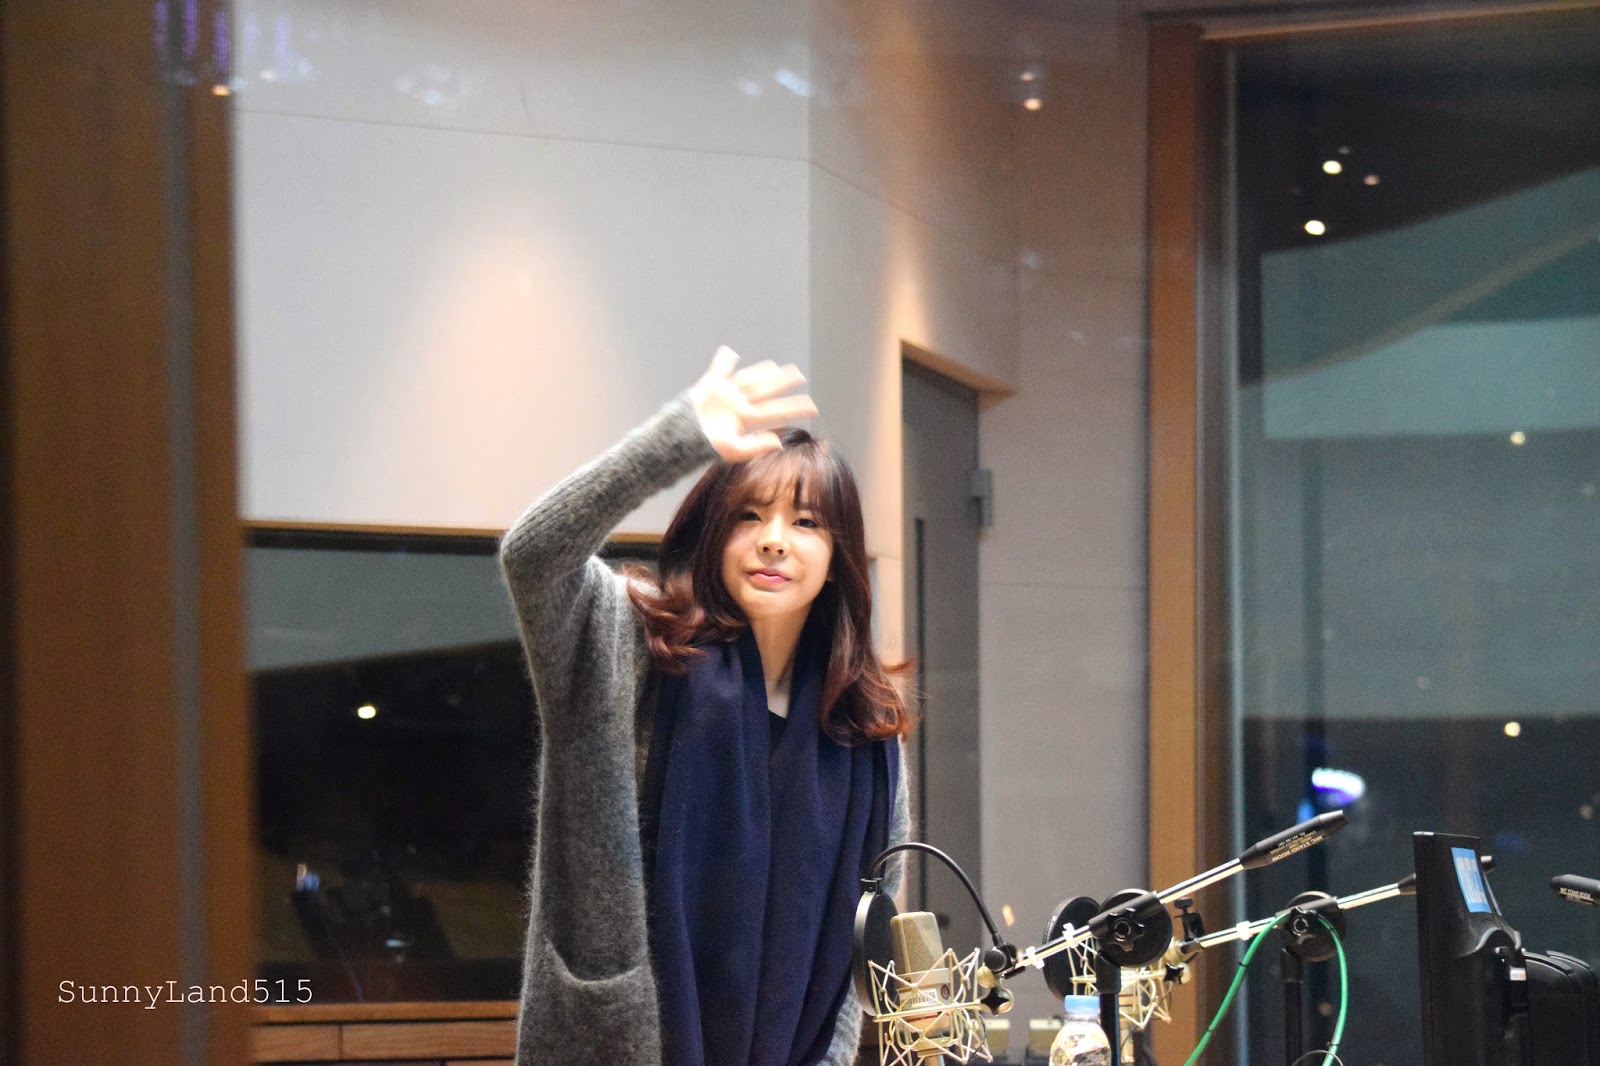 [OTHER][06-02-2015]Hình ảnh mới nhất từ DJ Sunny tại Radio MBC FM4U - "FM Date" - Page 10 DSC_0007_Fotor